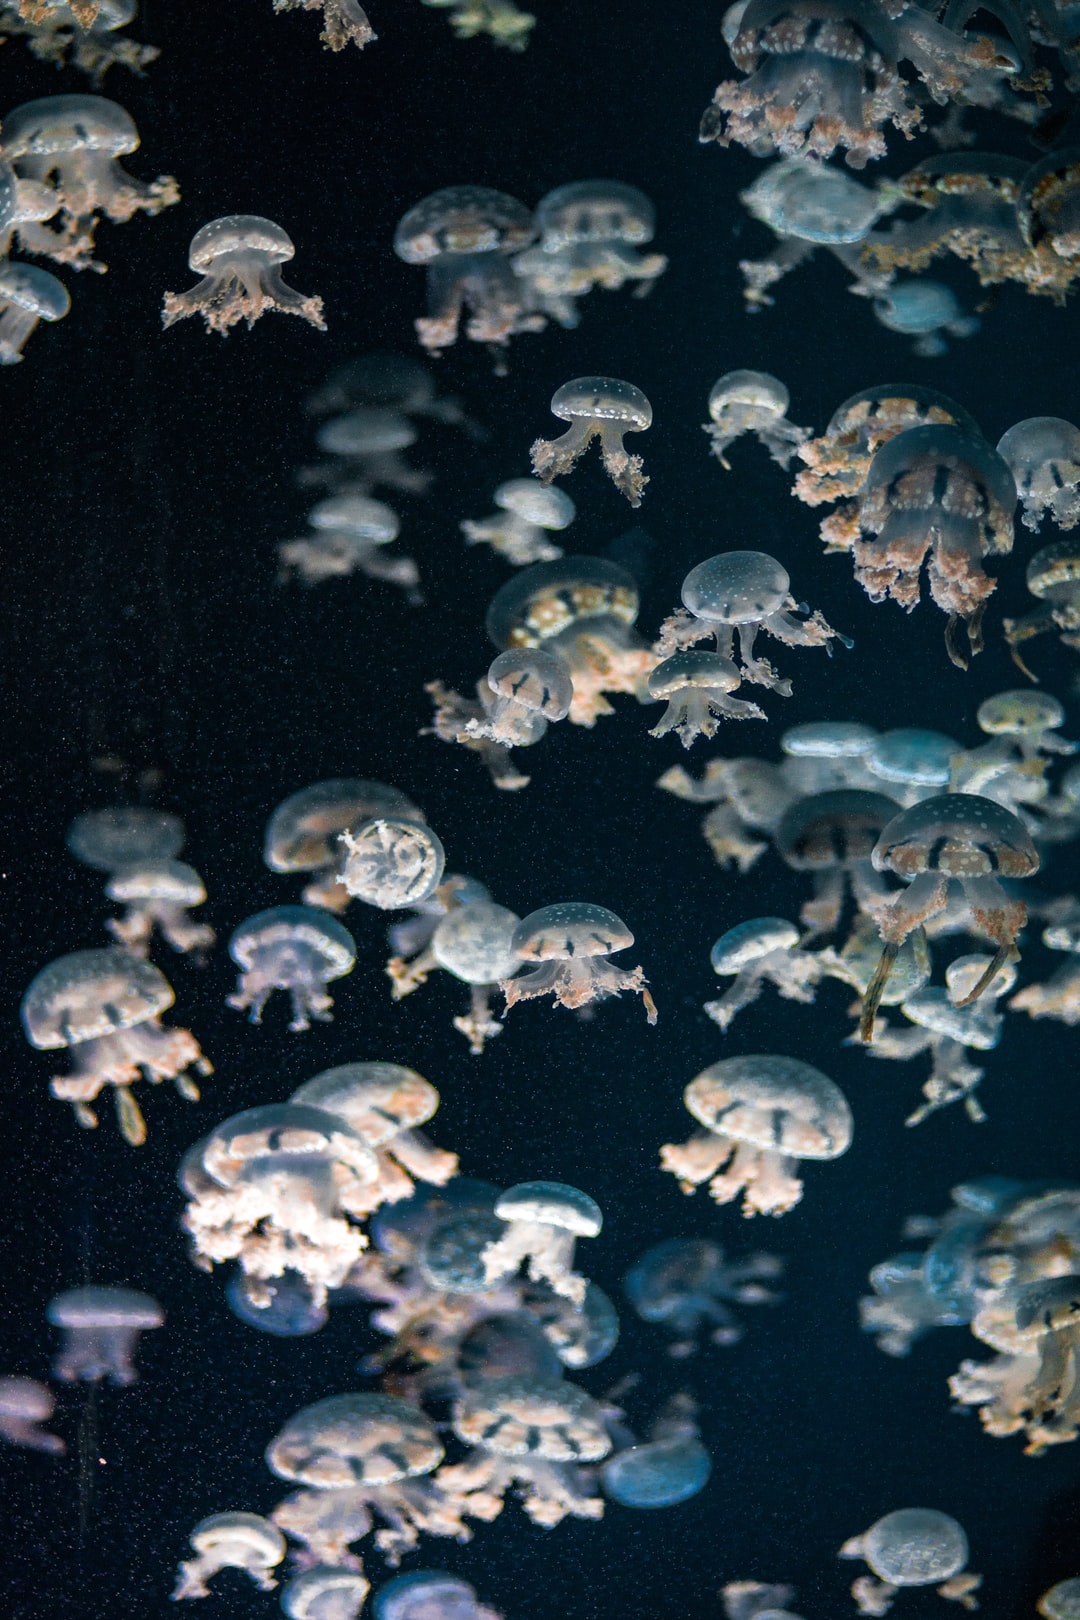 24 wichtige Fragen zu Wie Viele Eier Legt Eine Aquarium Schnecke?